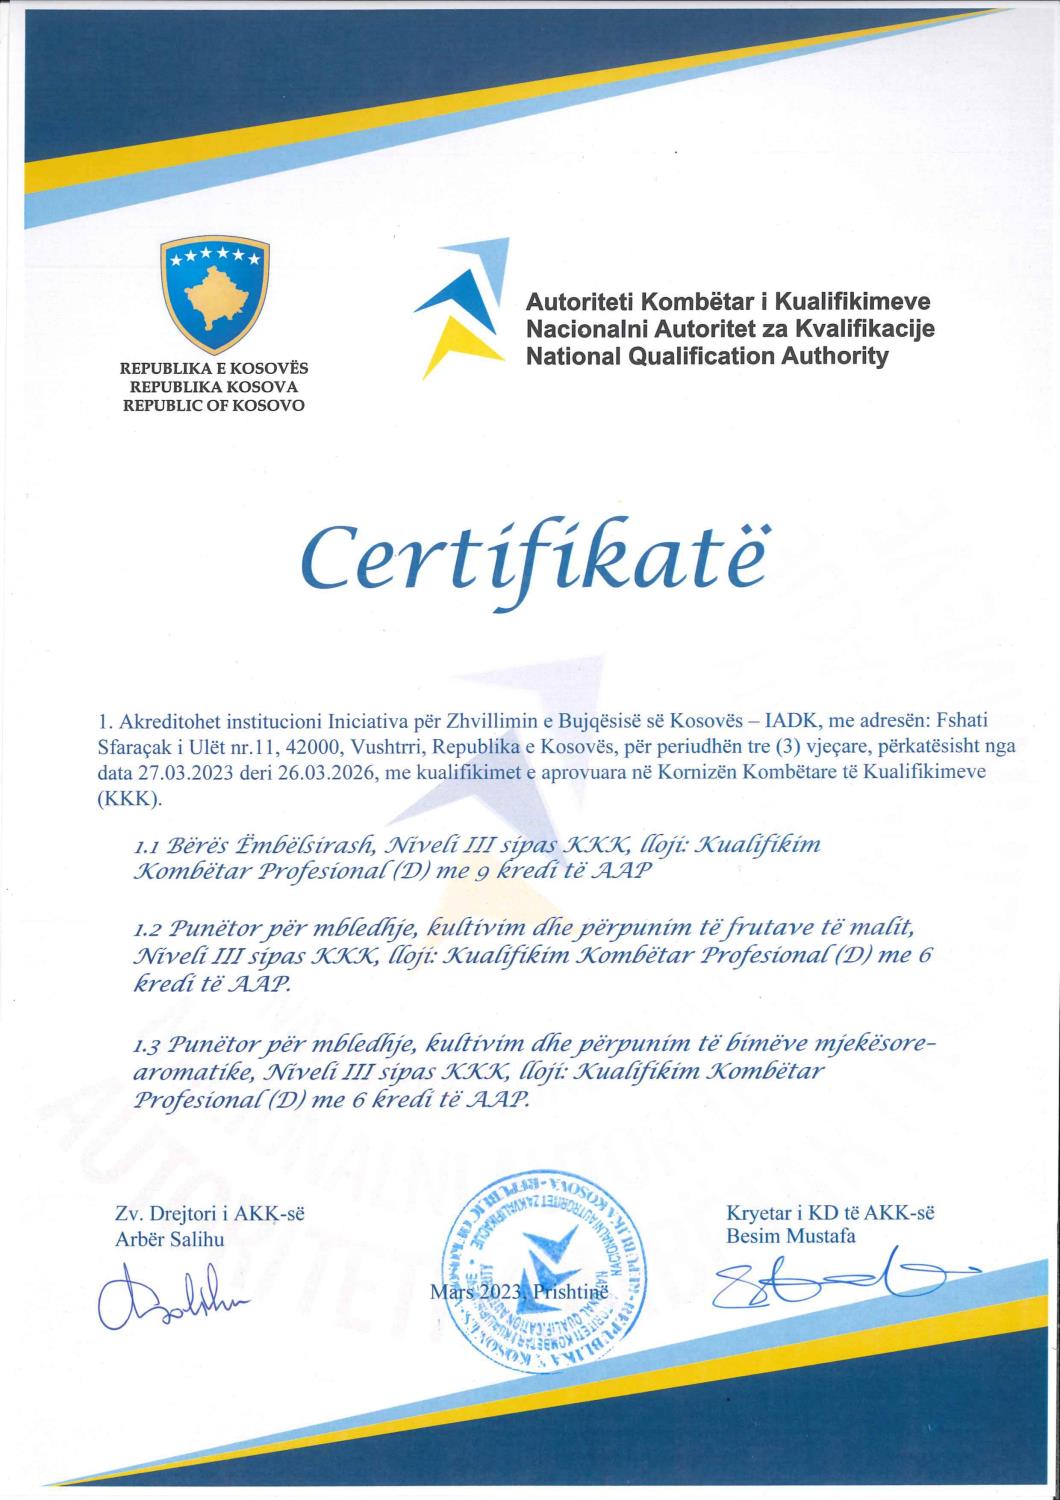 IADK akreditohet për ofrimin e tri kualifikimeve të reja nga Autoriteti Kombëtar i Kualifikimeve